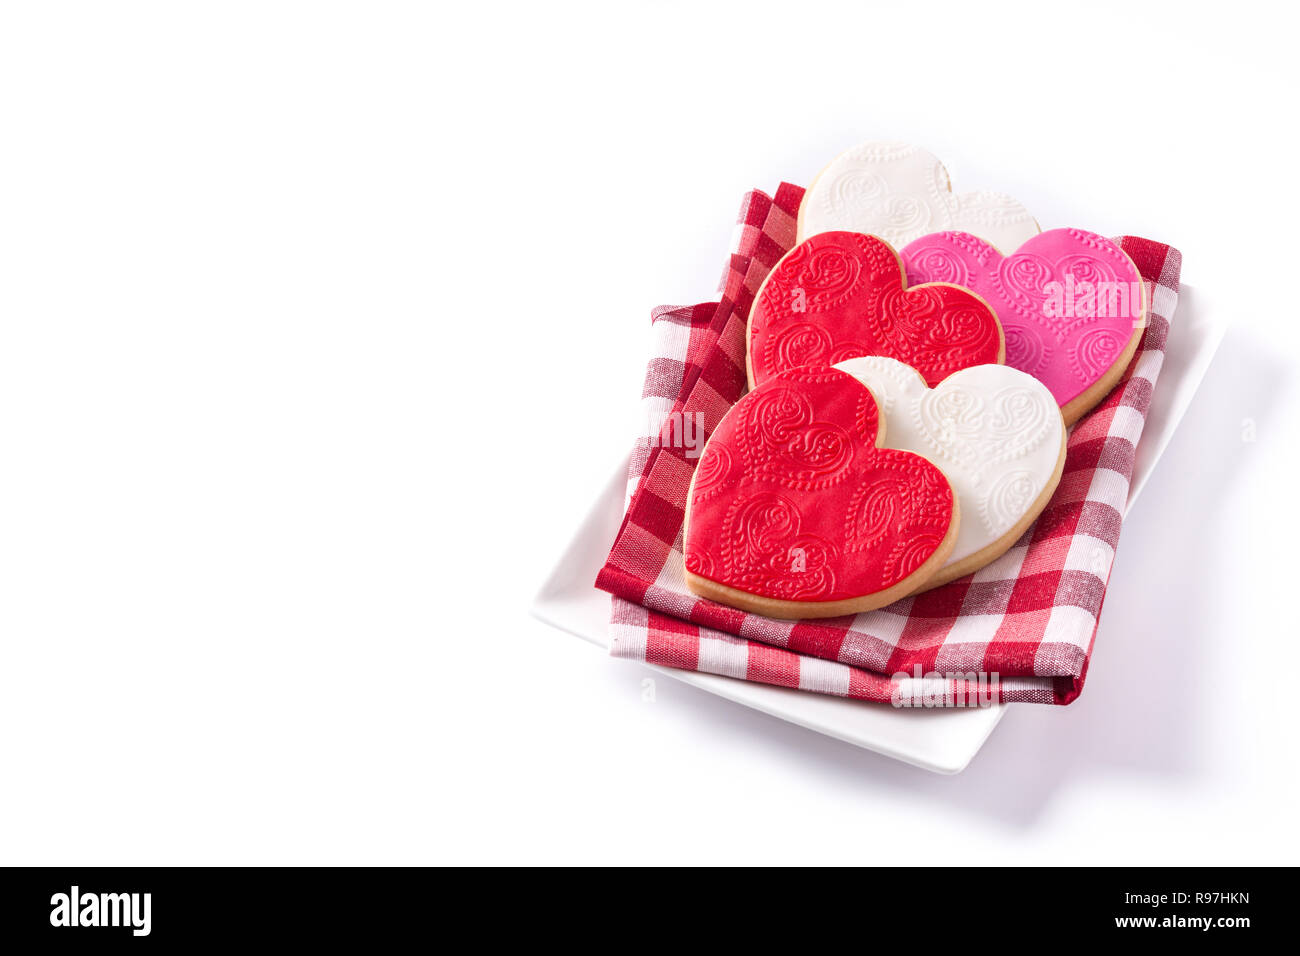 Les cookies en forme de cœur pour la Saint-Valentin isolé sur fond blanc. Copyspace Banque D'Images